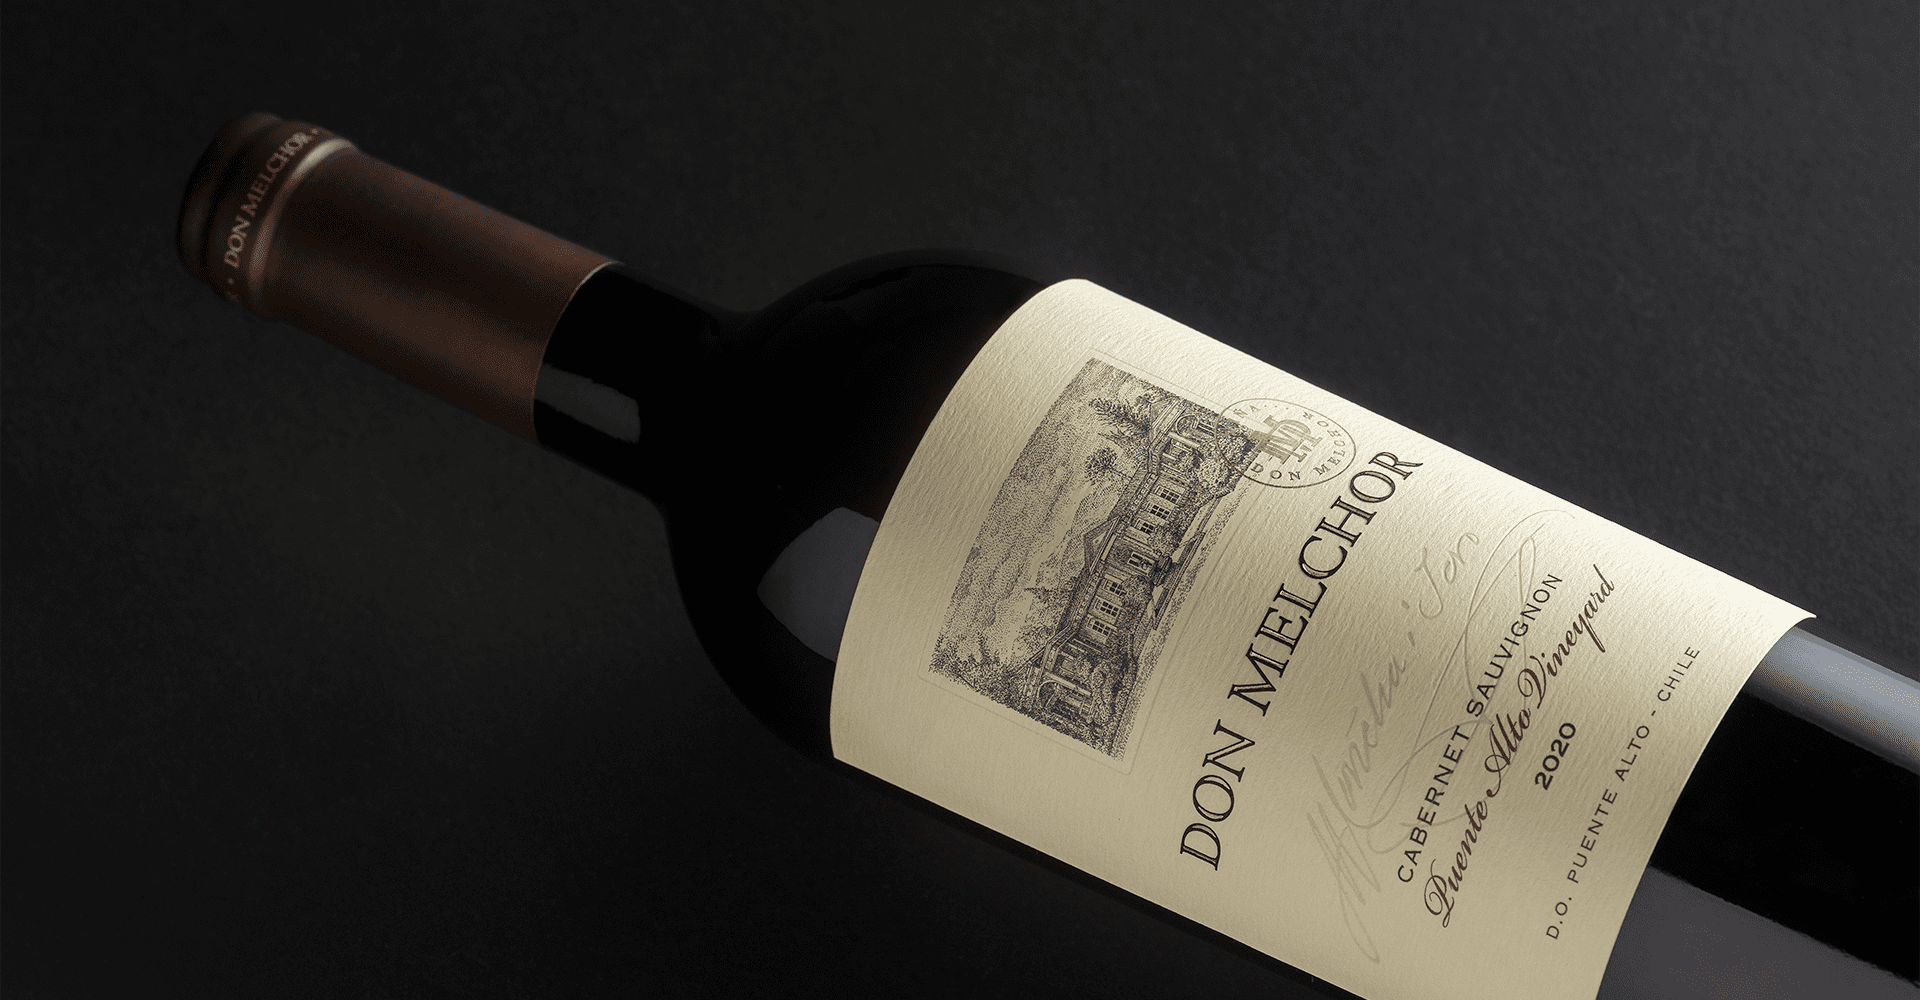 Don Melchor 2020 entre os 100 melhores vinhos chilenos de James Suckling